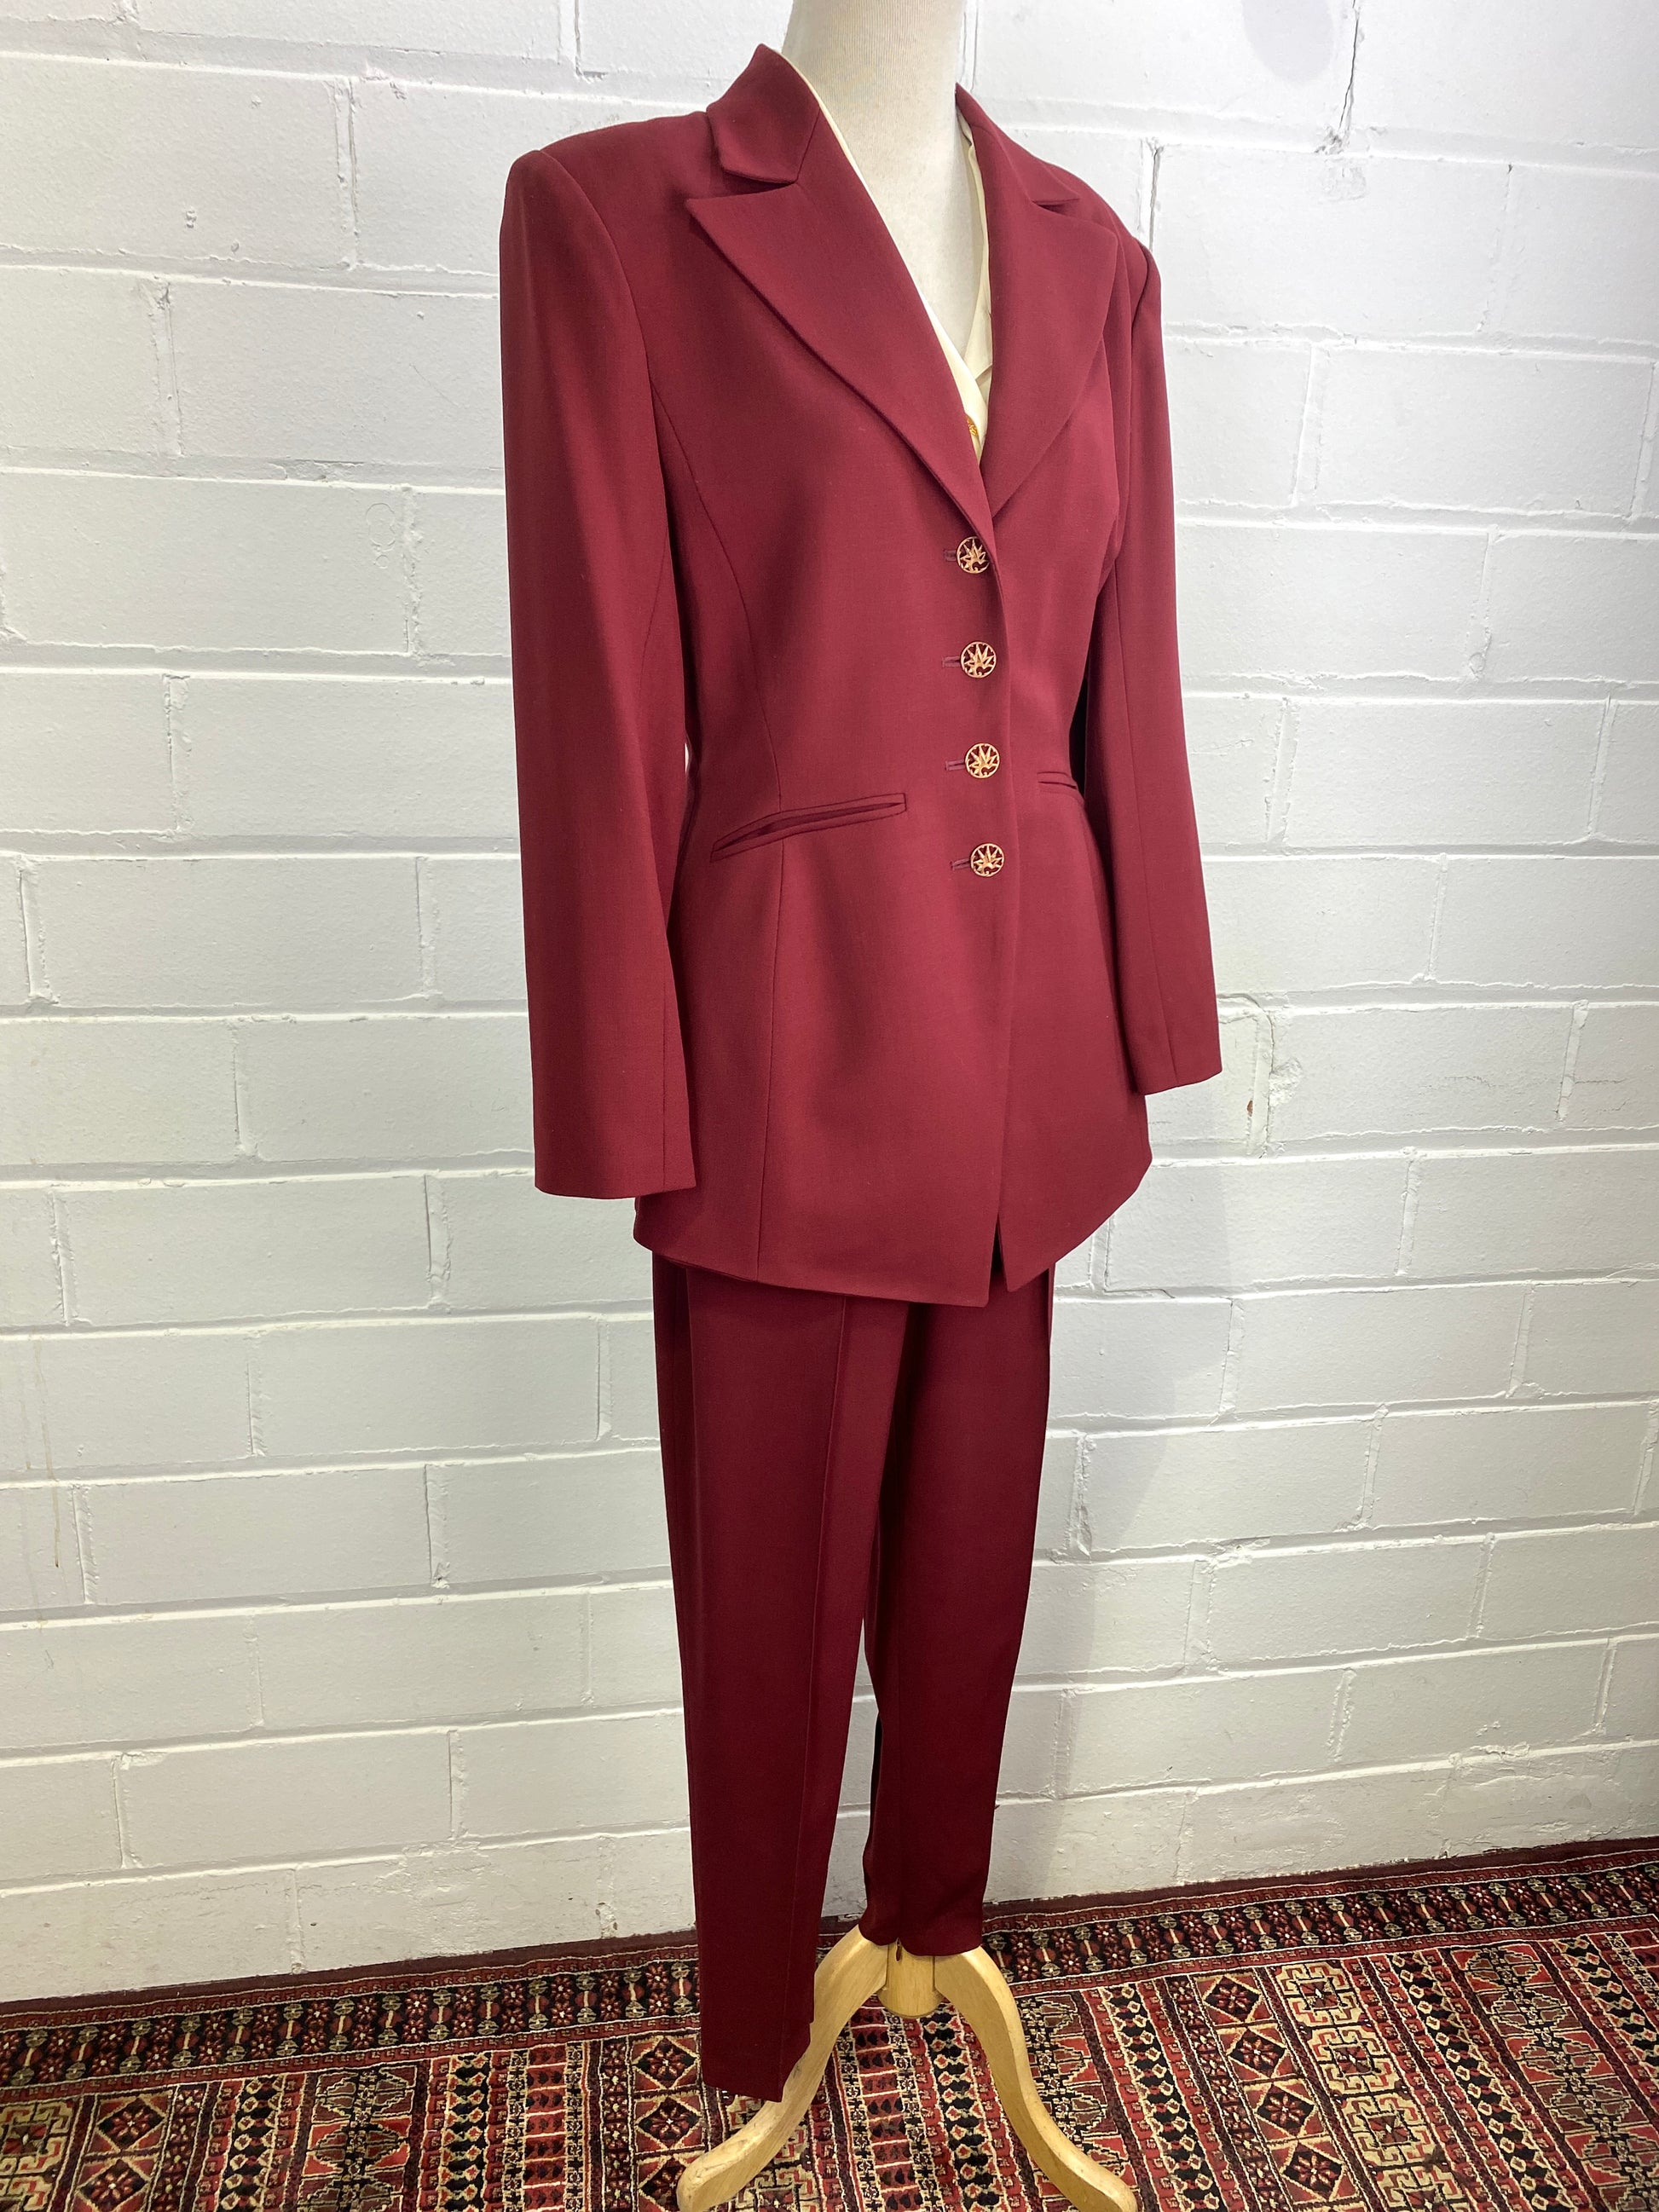 Vintage 1980s Sophie Sitbon Burgundy Wool Pant Suit, Tapered Leg, W29"